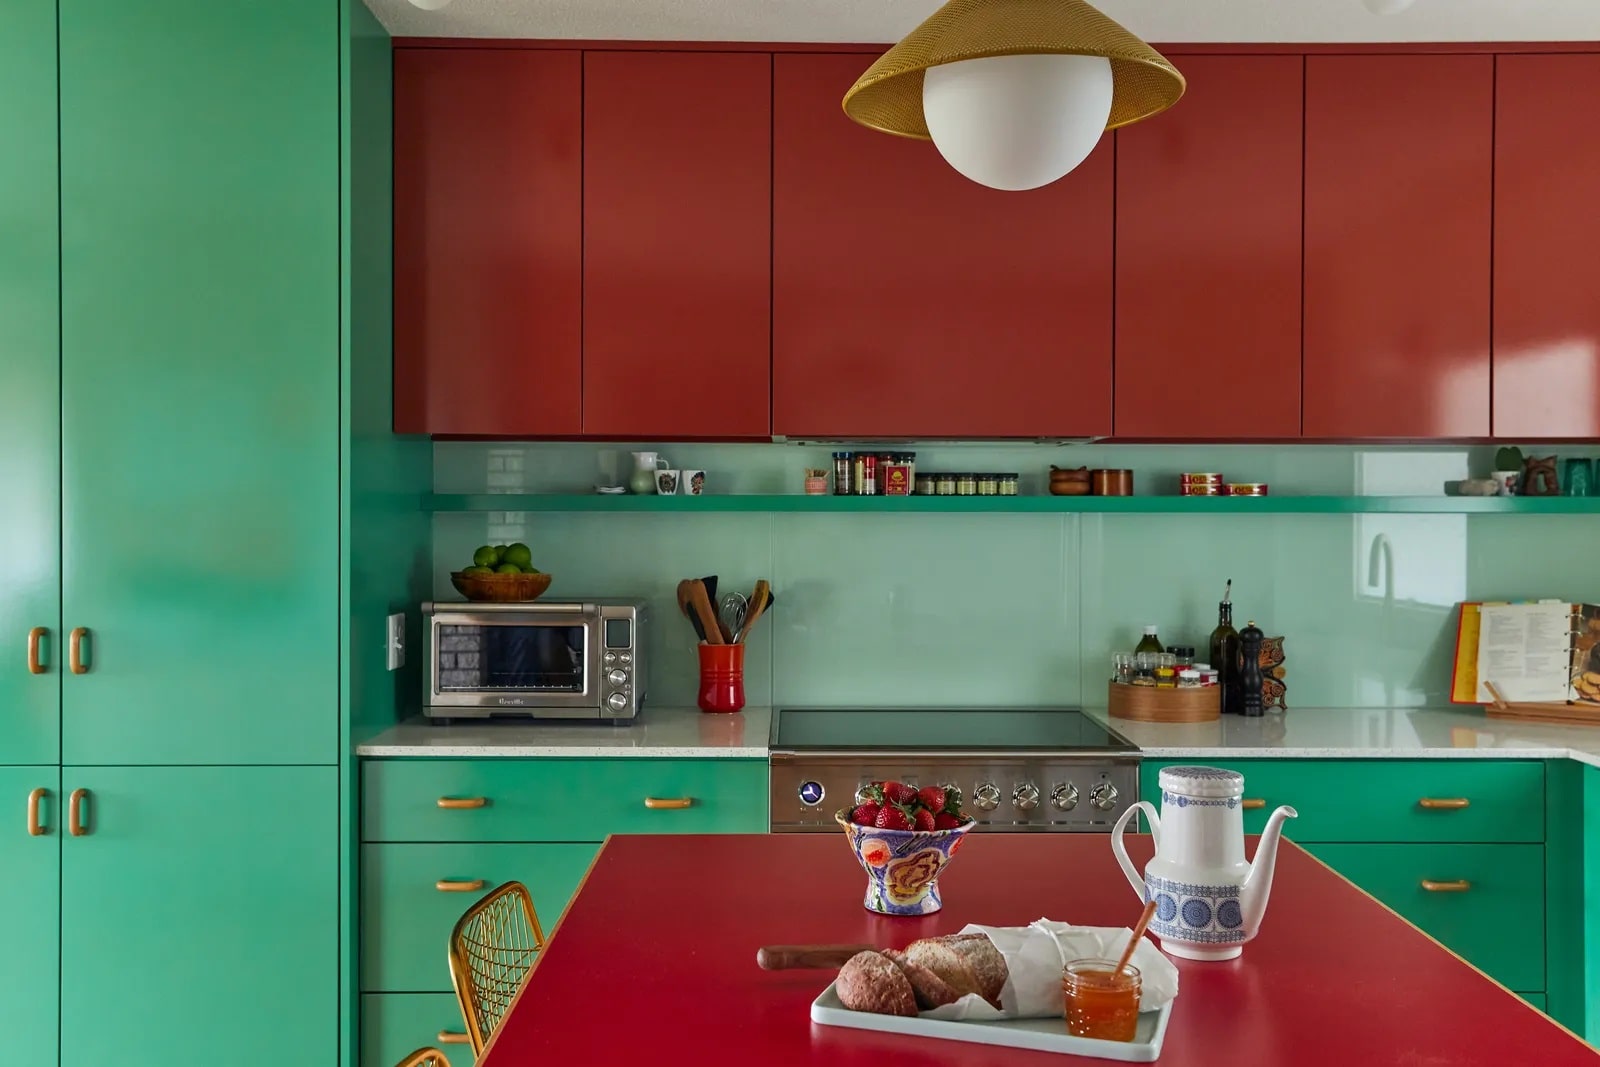 رنگ سبز و قرمز برای کابینت بزرگ آشپزخانه به صورت دو رنگ